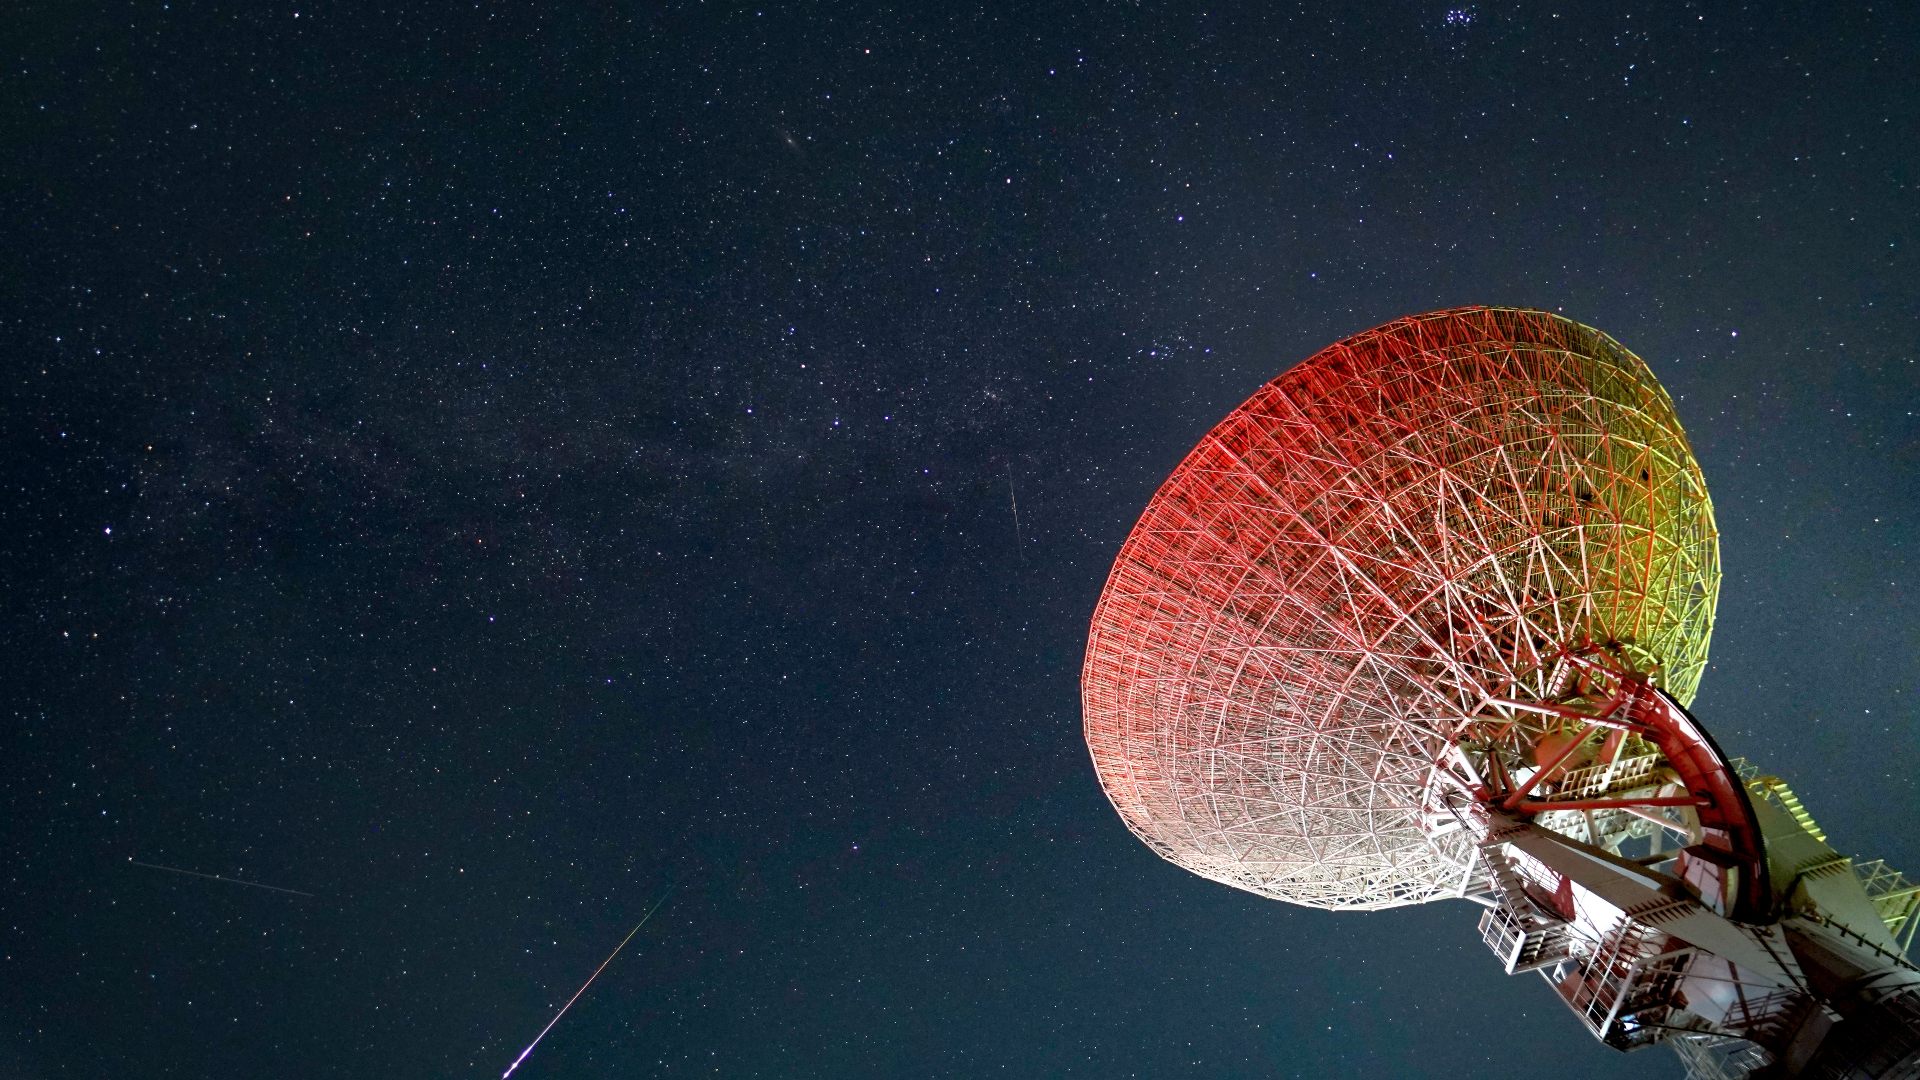 Parlak Prusya meteorları, görüntünün sağındaki büyük teleskop çanağıyla birlikte yıldızlı gökyüzünde ilerliyor.